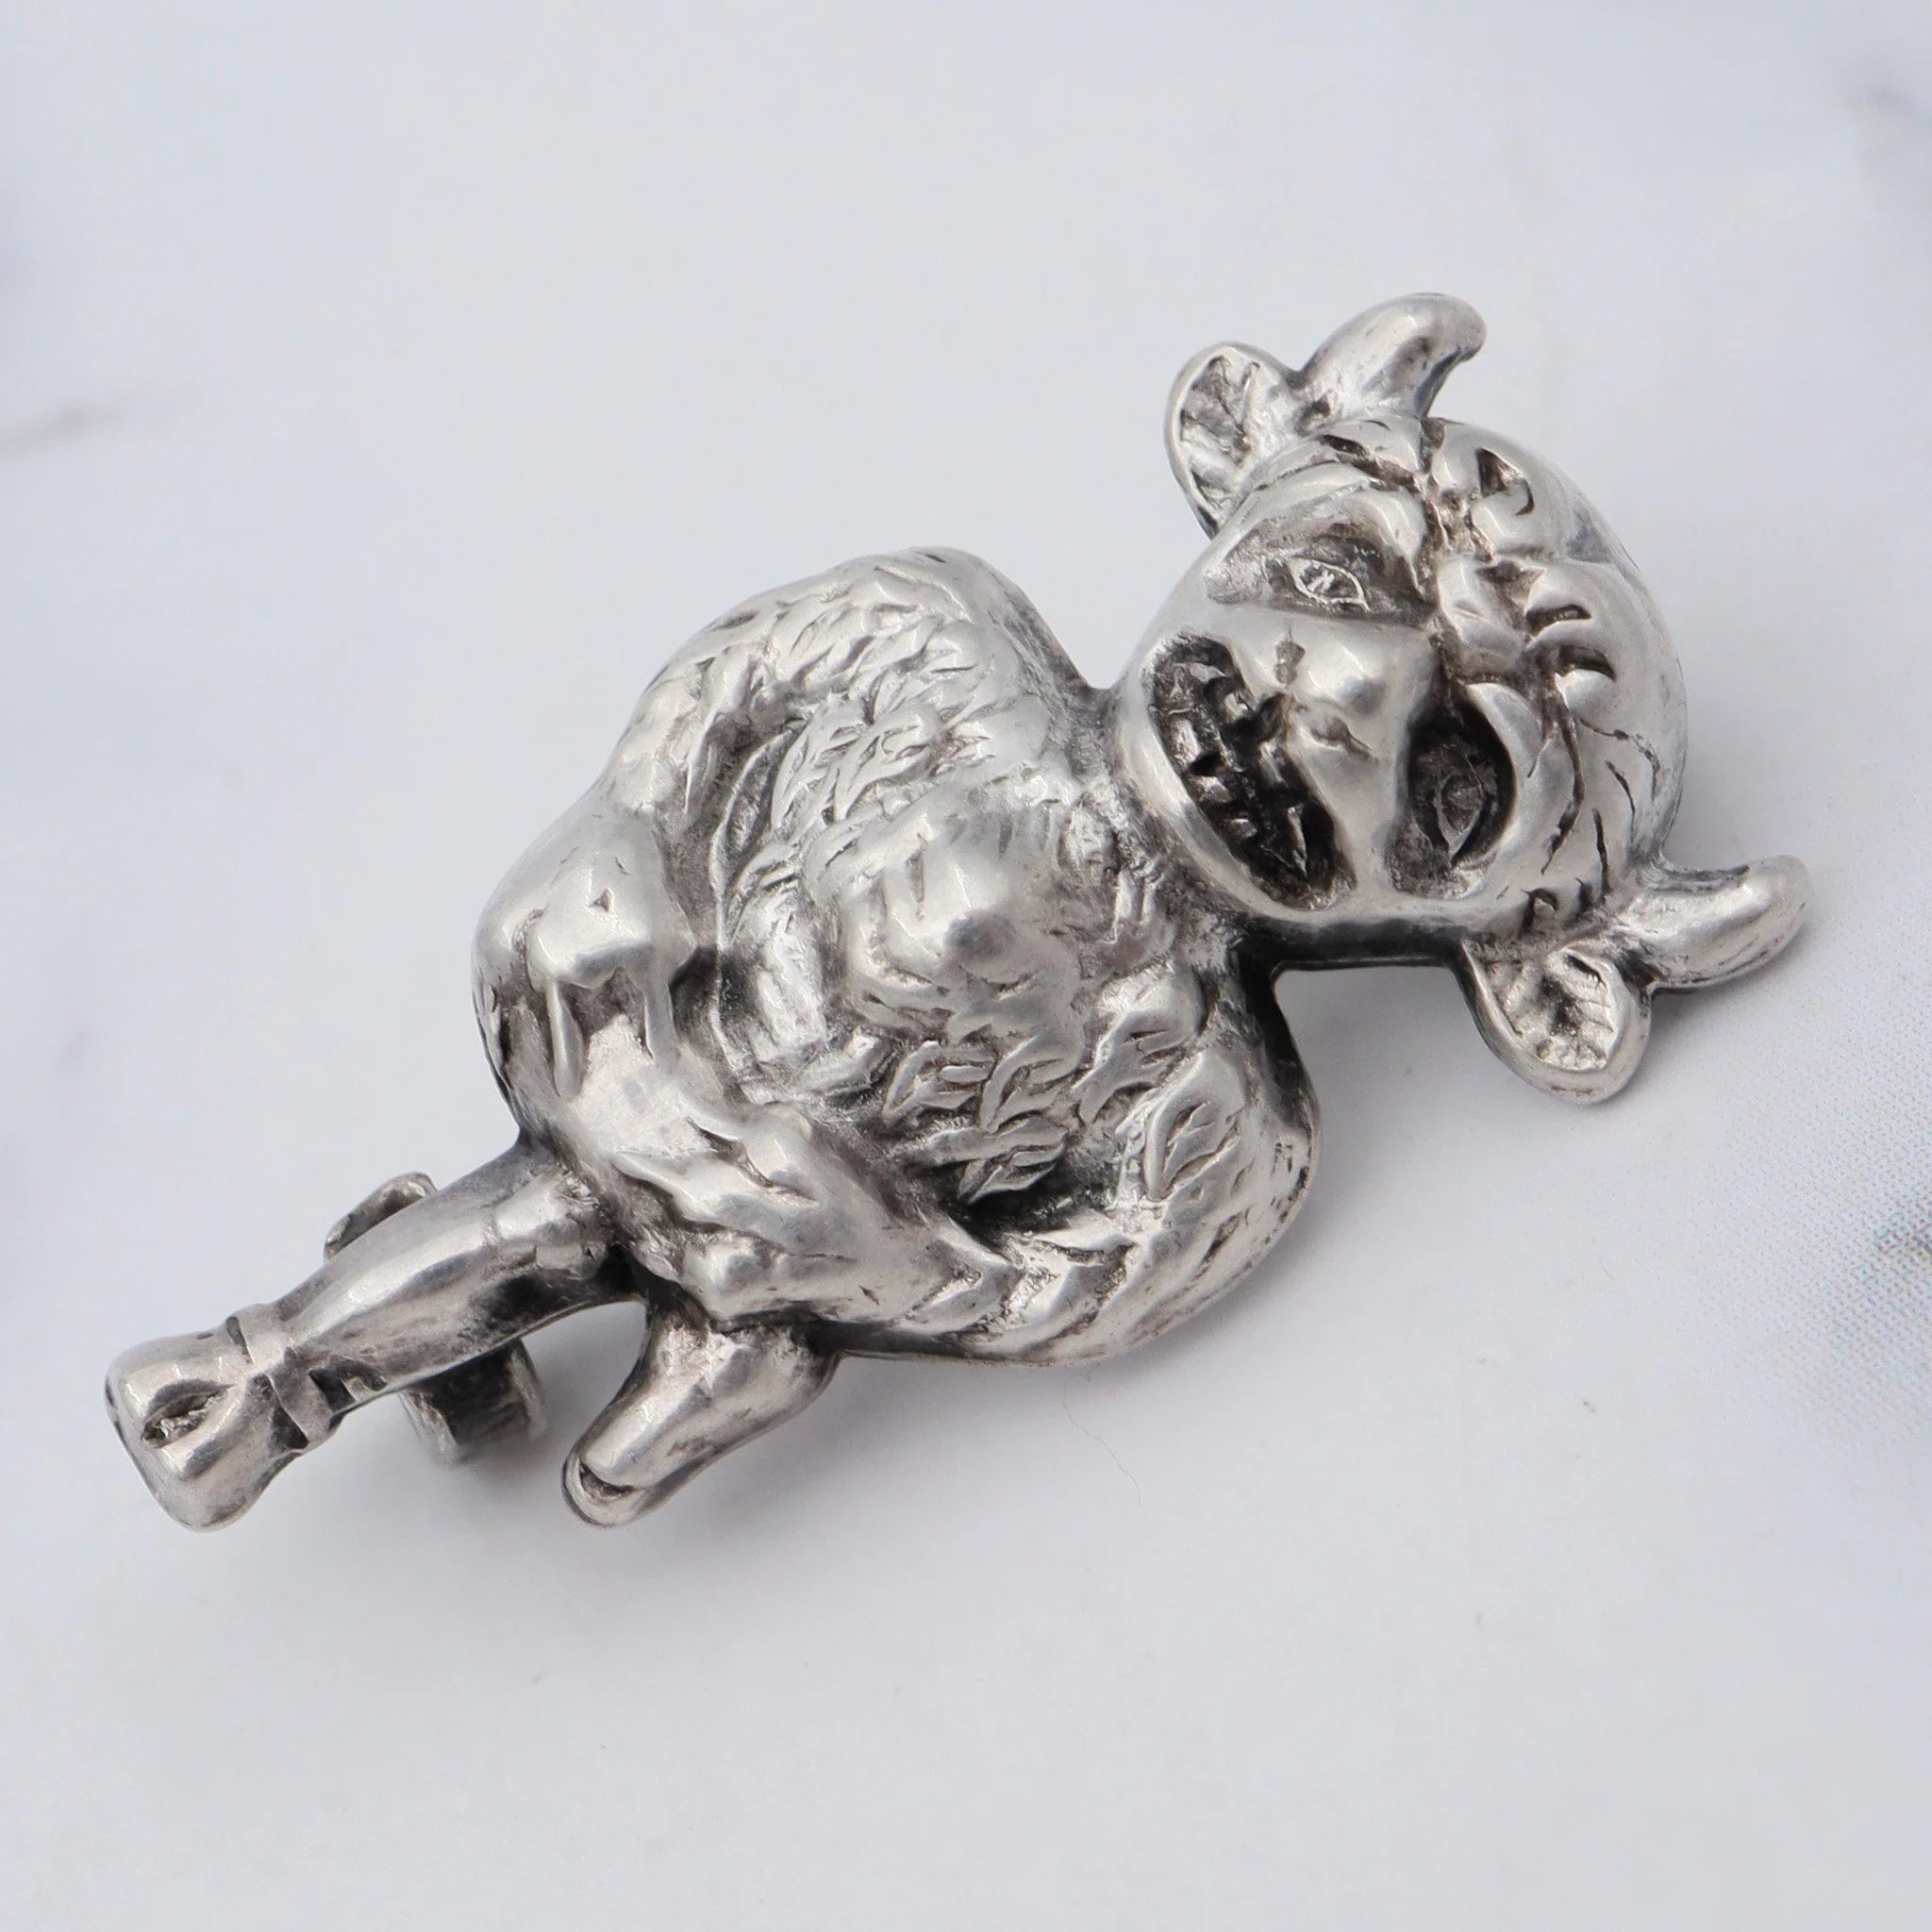 Antique sterling Minotaur pin/brooch